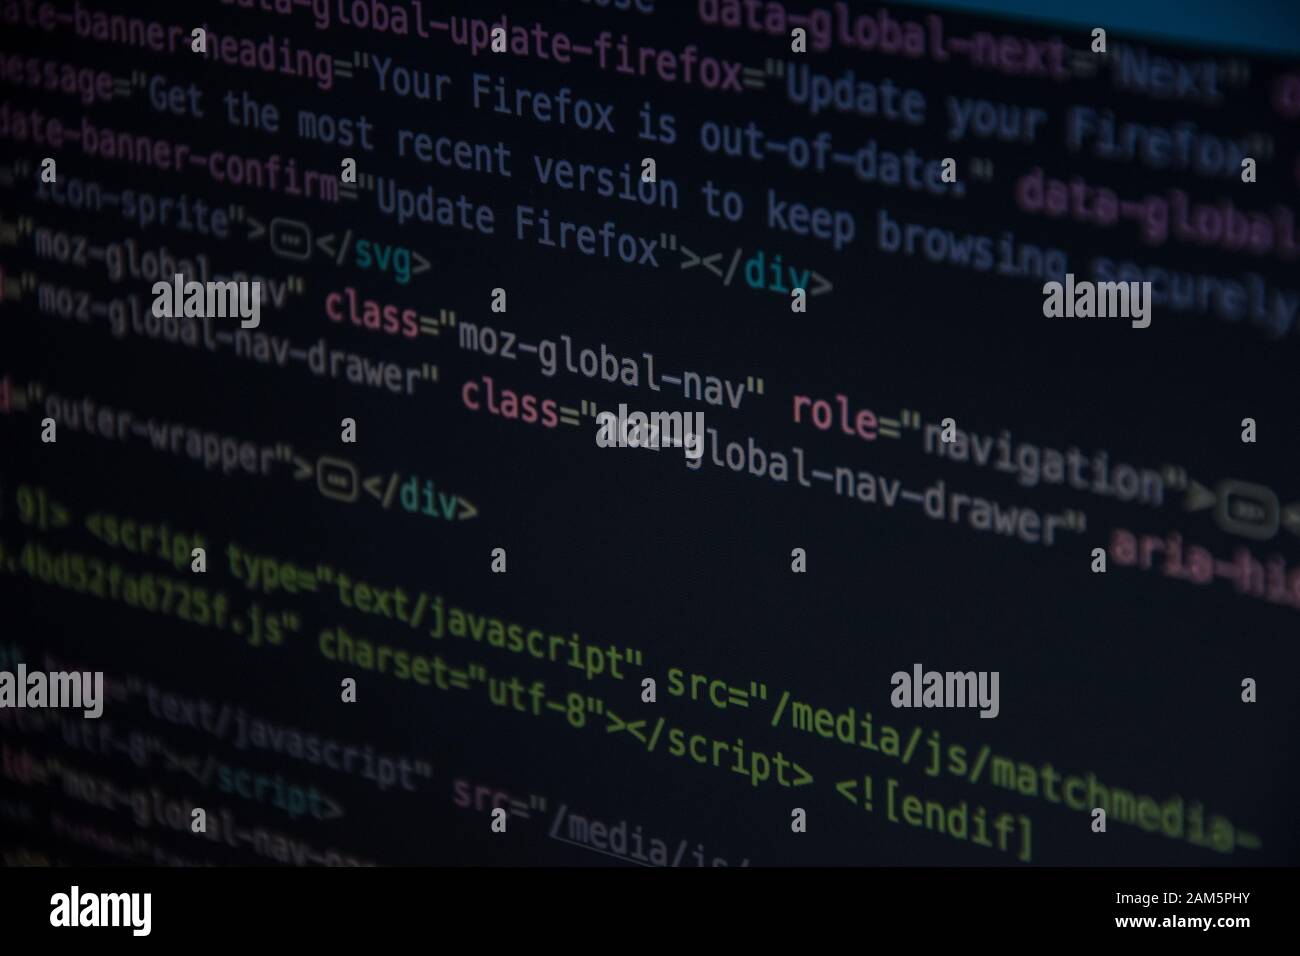 Mã HTML CSS đang quan sát màn hình sẽ giúp cho website của bạn trông đẹp hơn và chuyên nghiệp hơn. Bạn có muốn tìm hiểu về cách thiết kế website đẹp với mã HTML CSS? Nhấn vào hình ảnh liên quan để khám phá những bí quyết tuyệt vời này. 